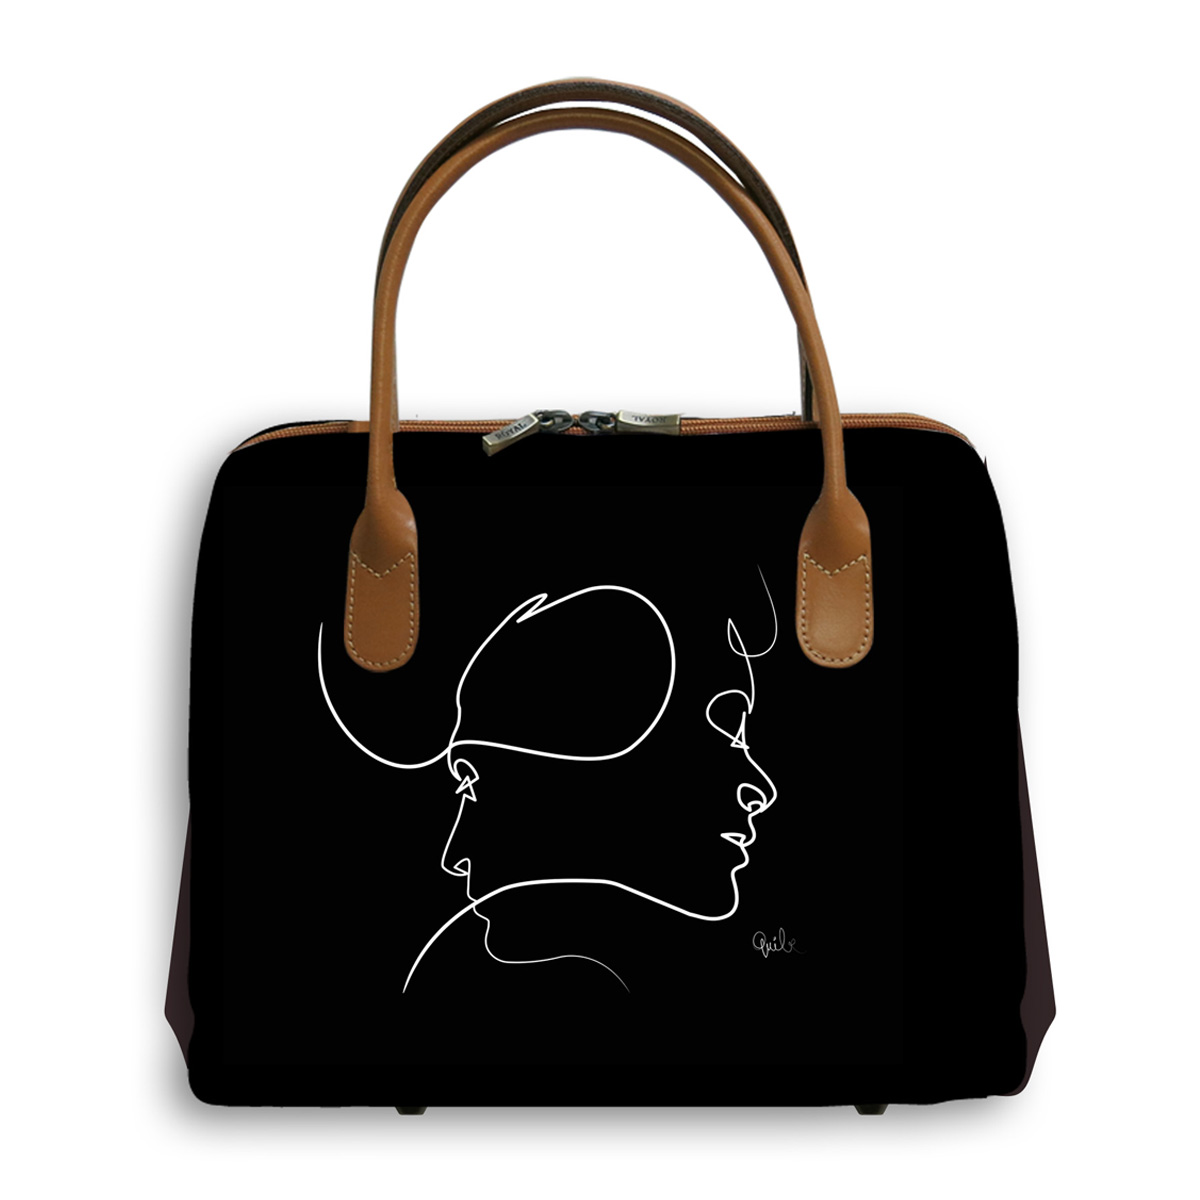 Sac créateur artisanal \'Quibe\' noir marron (Presque - visages)  - 30x26x11 cm - [A0330]